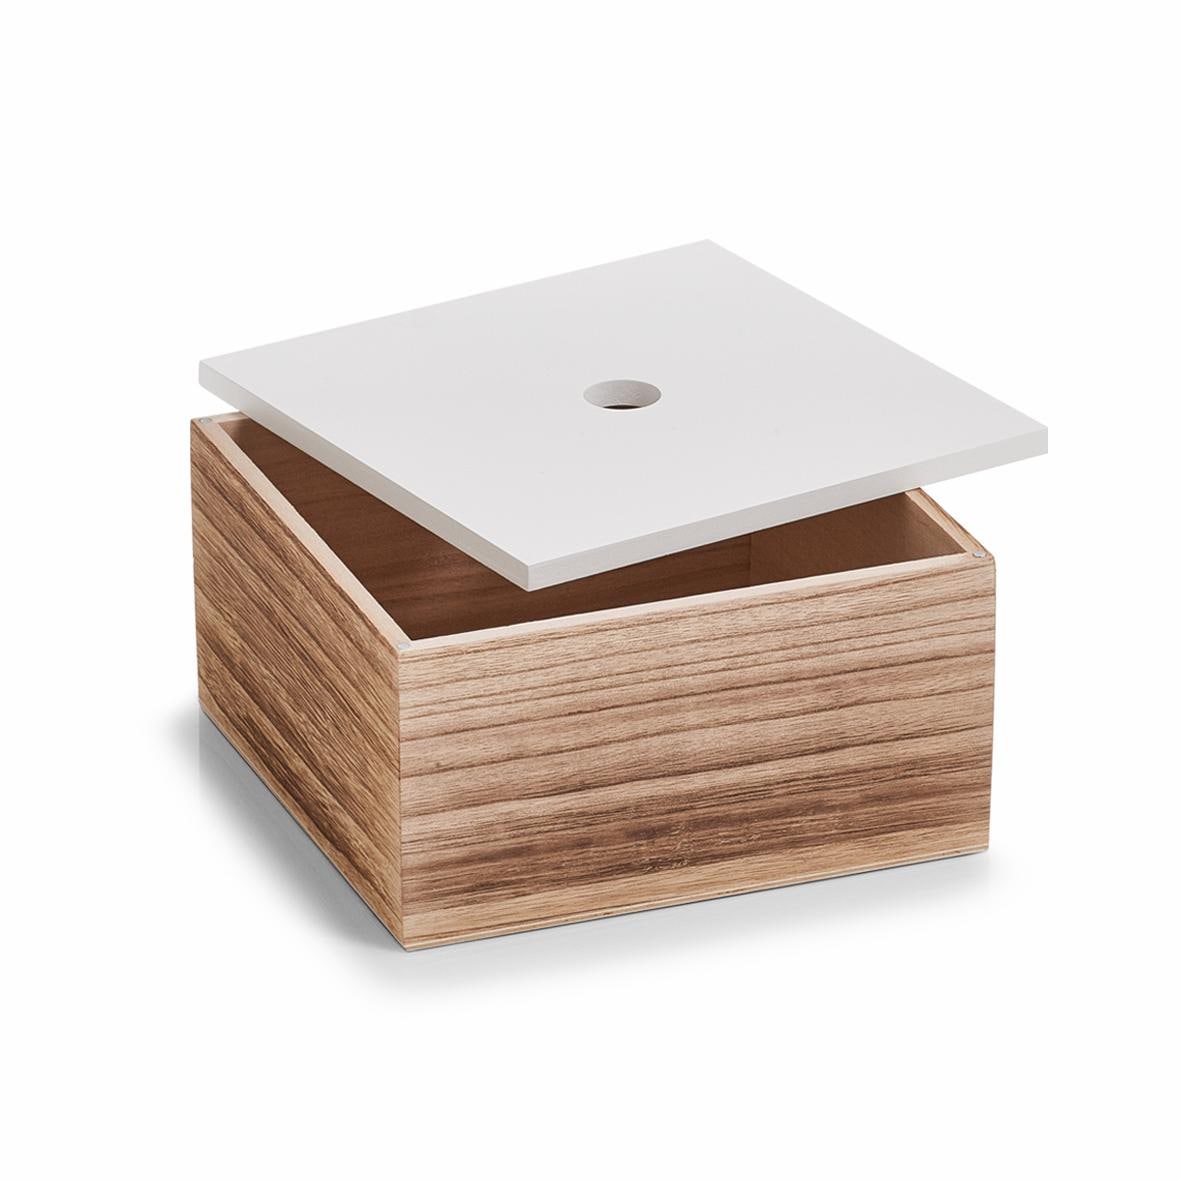 Zeller Present Aufbewahrungsbox, 3er Set, Holz, weiss/natur